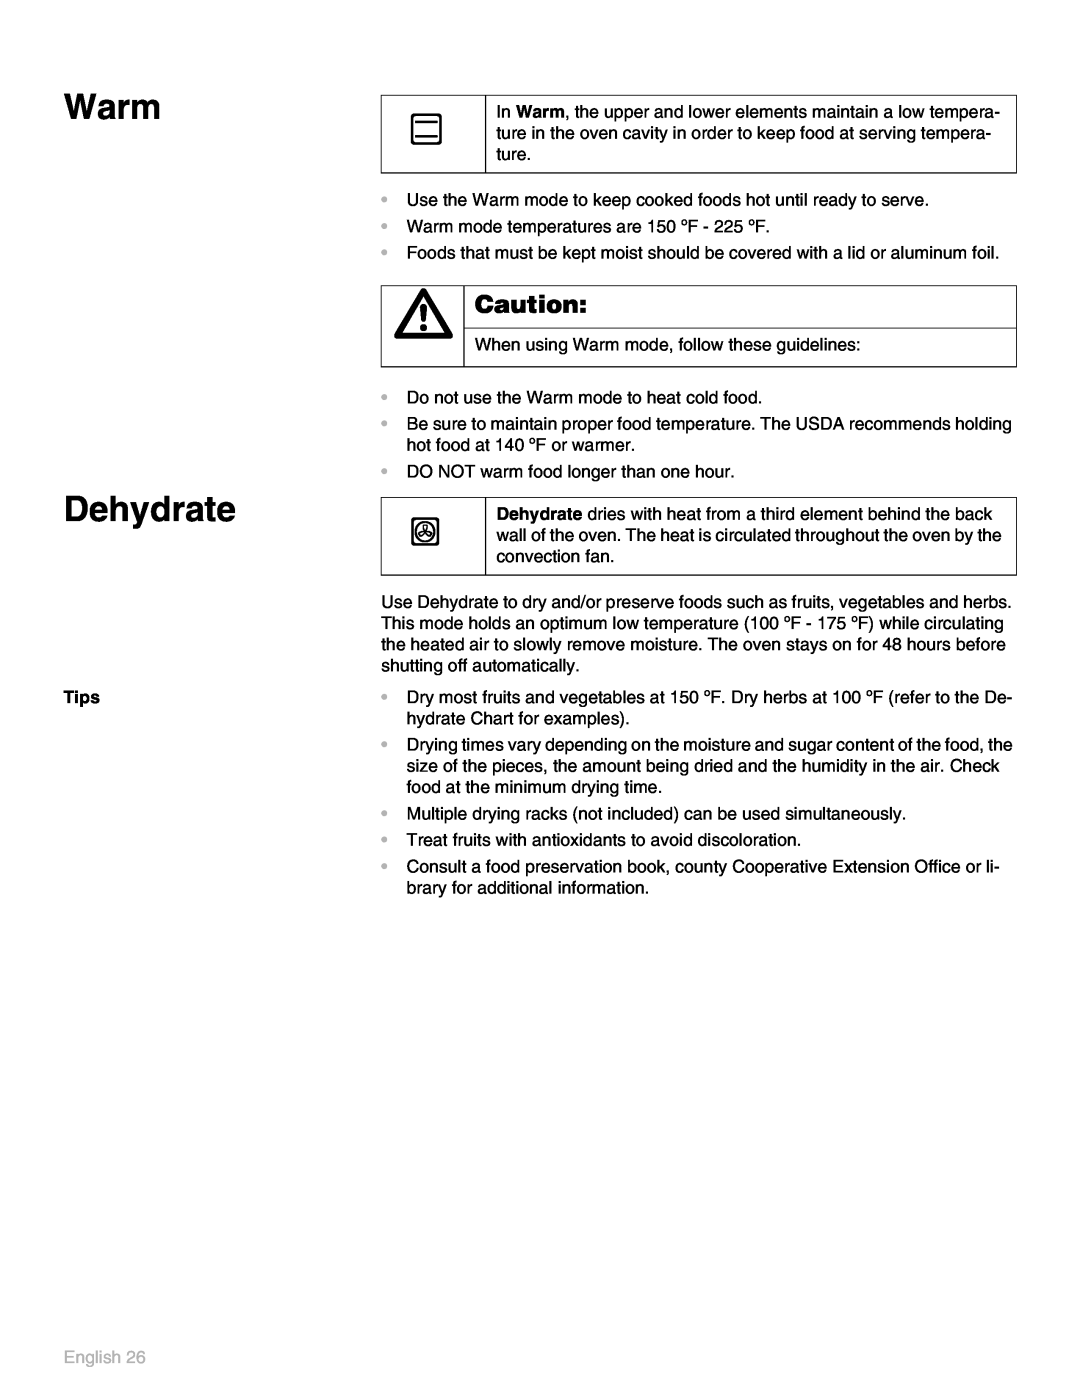 Thermador POD 302 manual Warm Dehydrate, English 